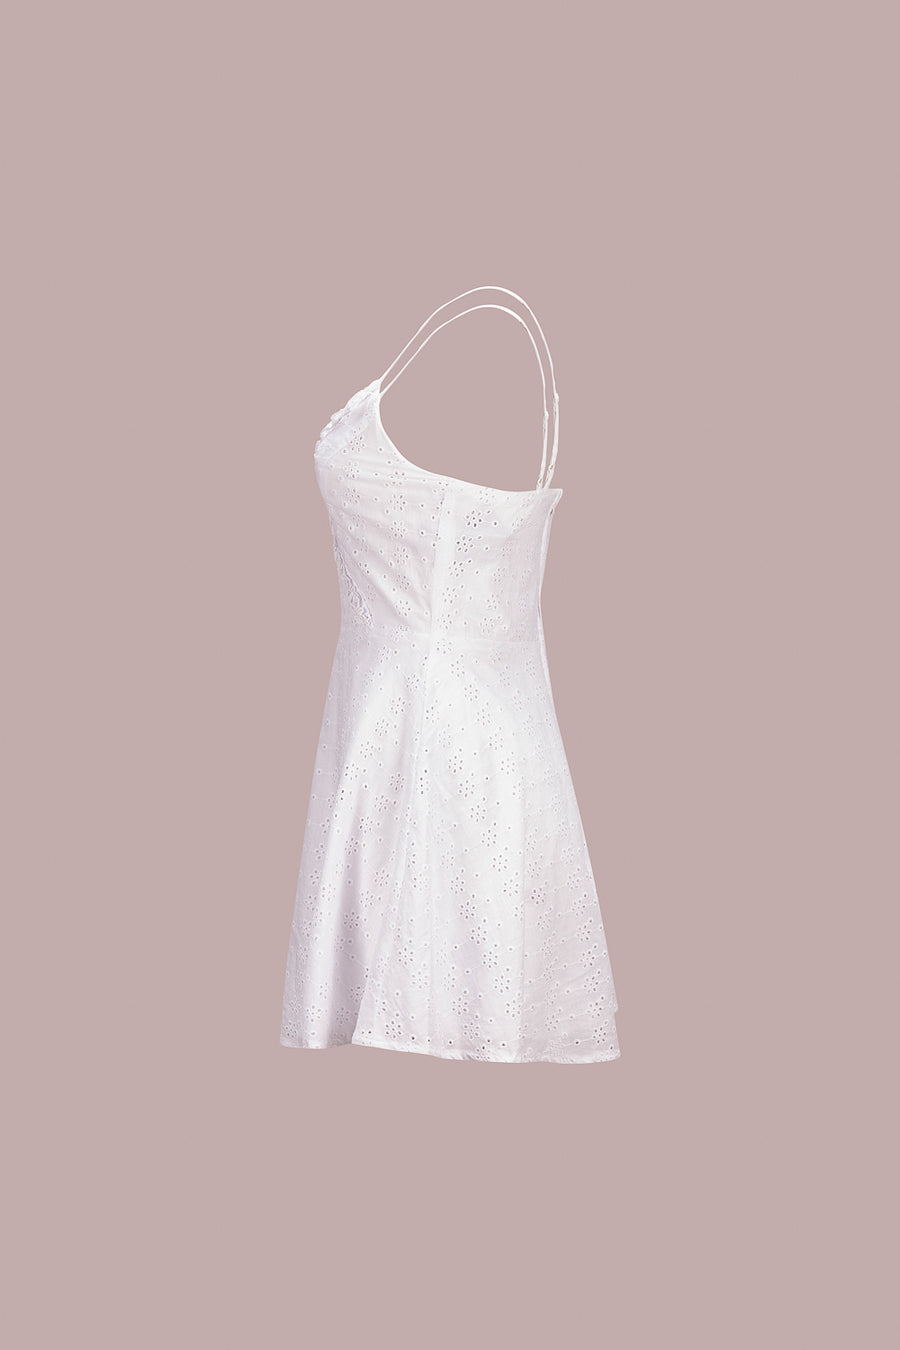 White Eyelet Ruffle Dress - Trixxi Clothing